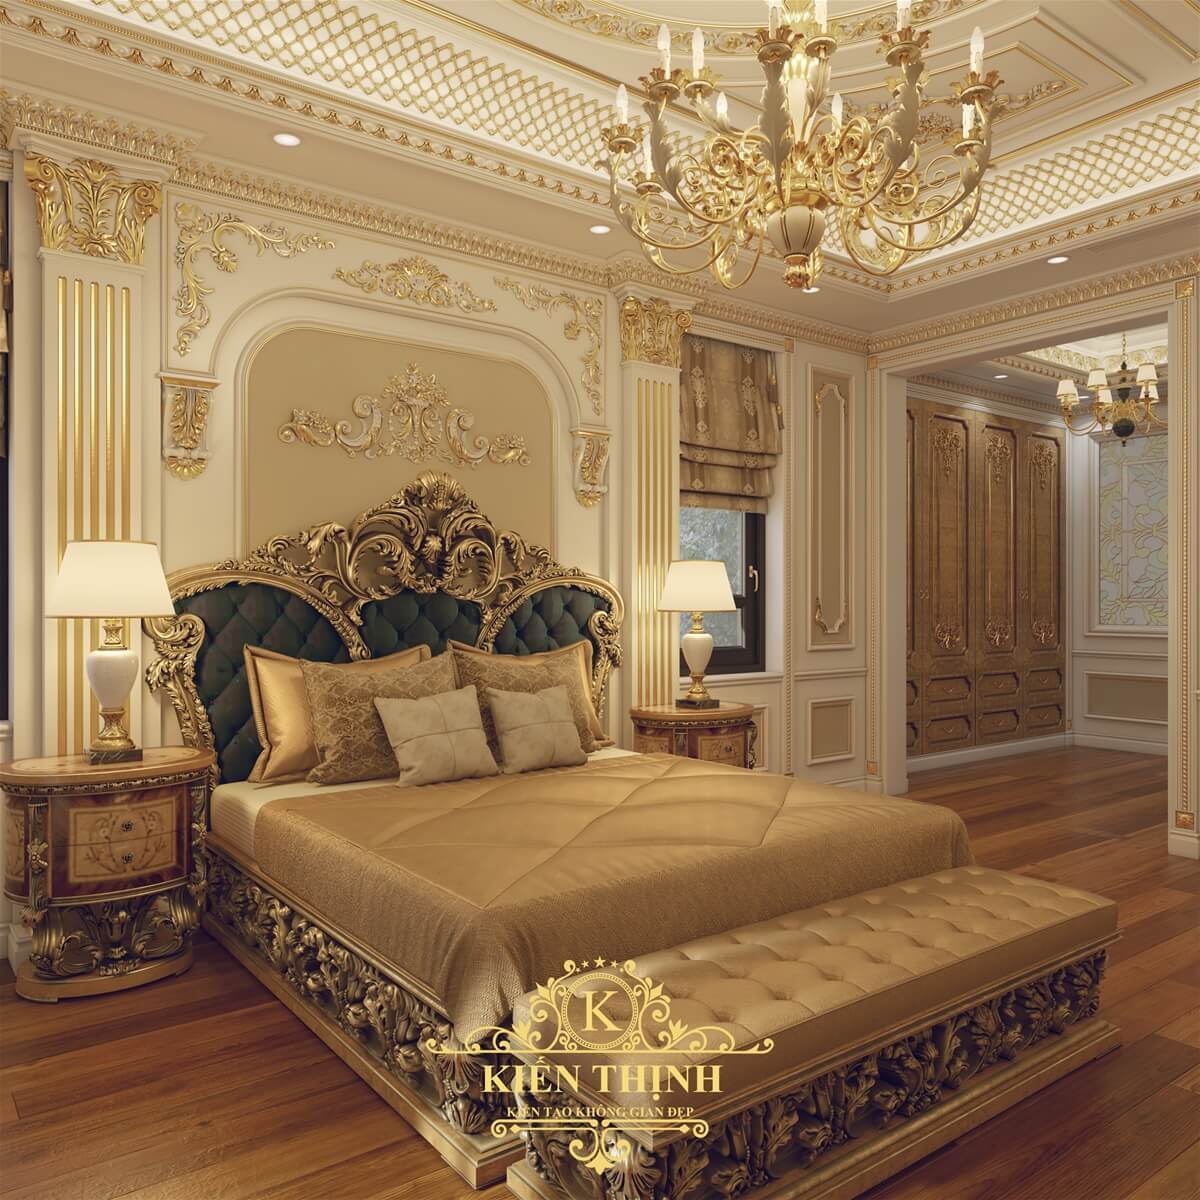  Mẫu thiết kế phòng ngủ biệt thự tân cổ điển Châu Âu đẹp lộng lẫy tại Nghệ An